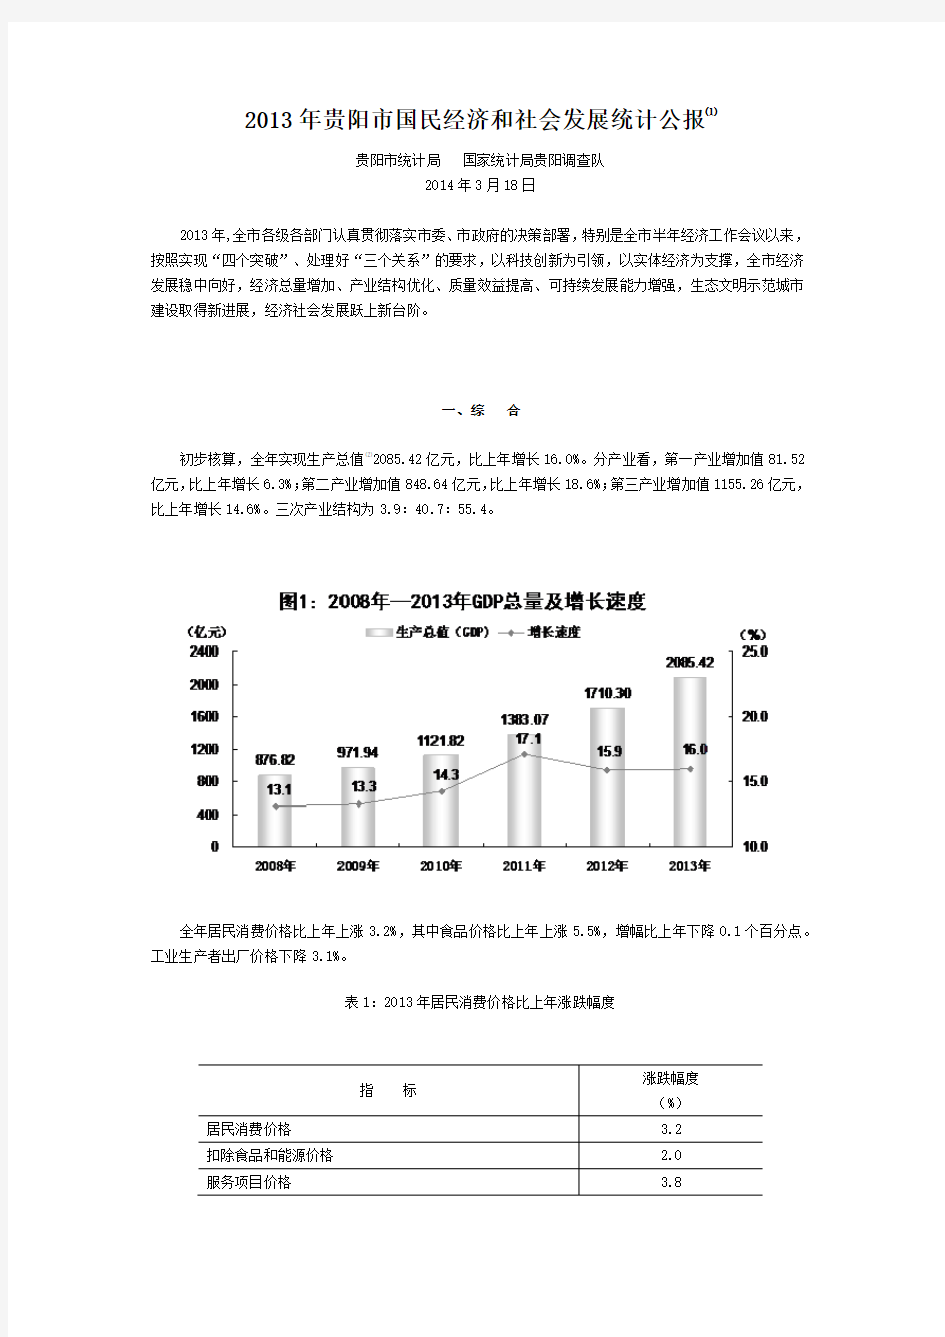 2013年贵阳市国民经济和社会发展统计公报